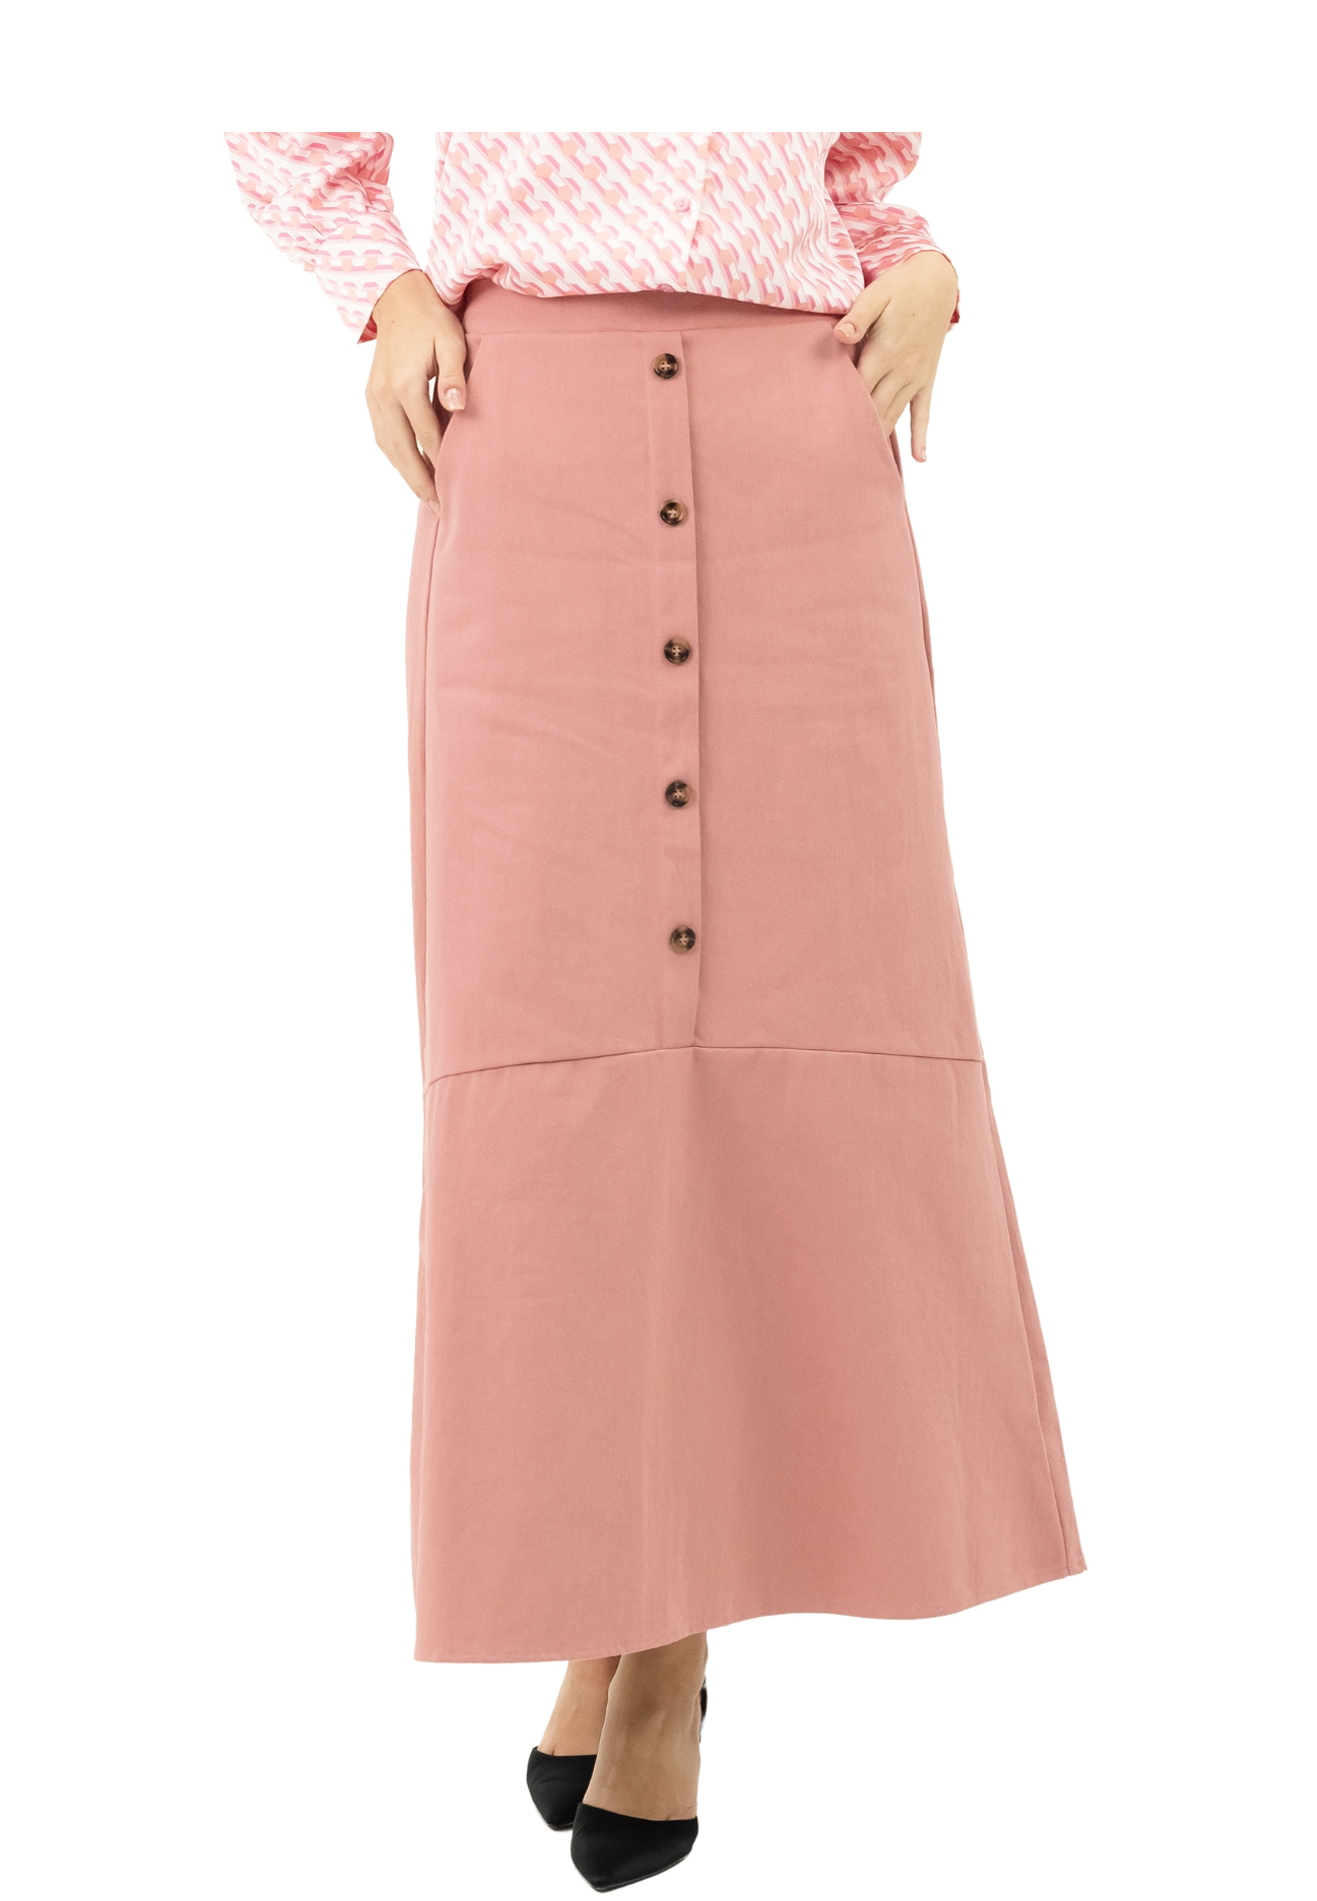 DAISY By VOIR Button Down Peplum Skirt